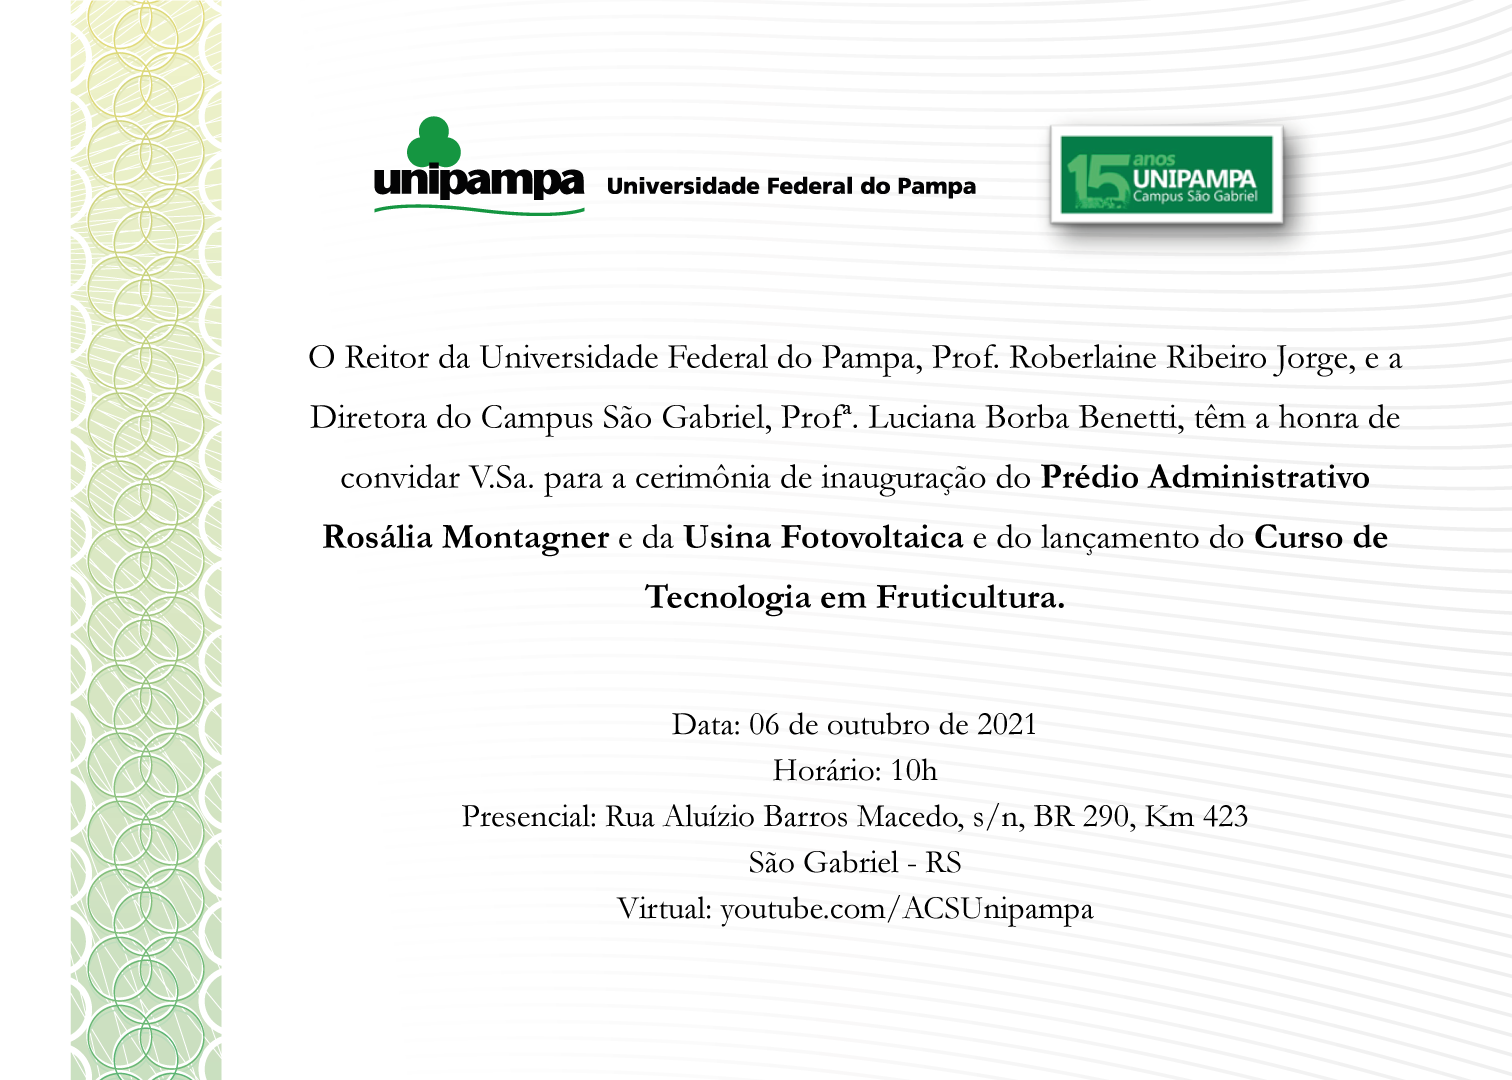 Convite para cerimônia de inaugurações e lançamento de curso no Campus São Gabriel